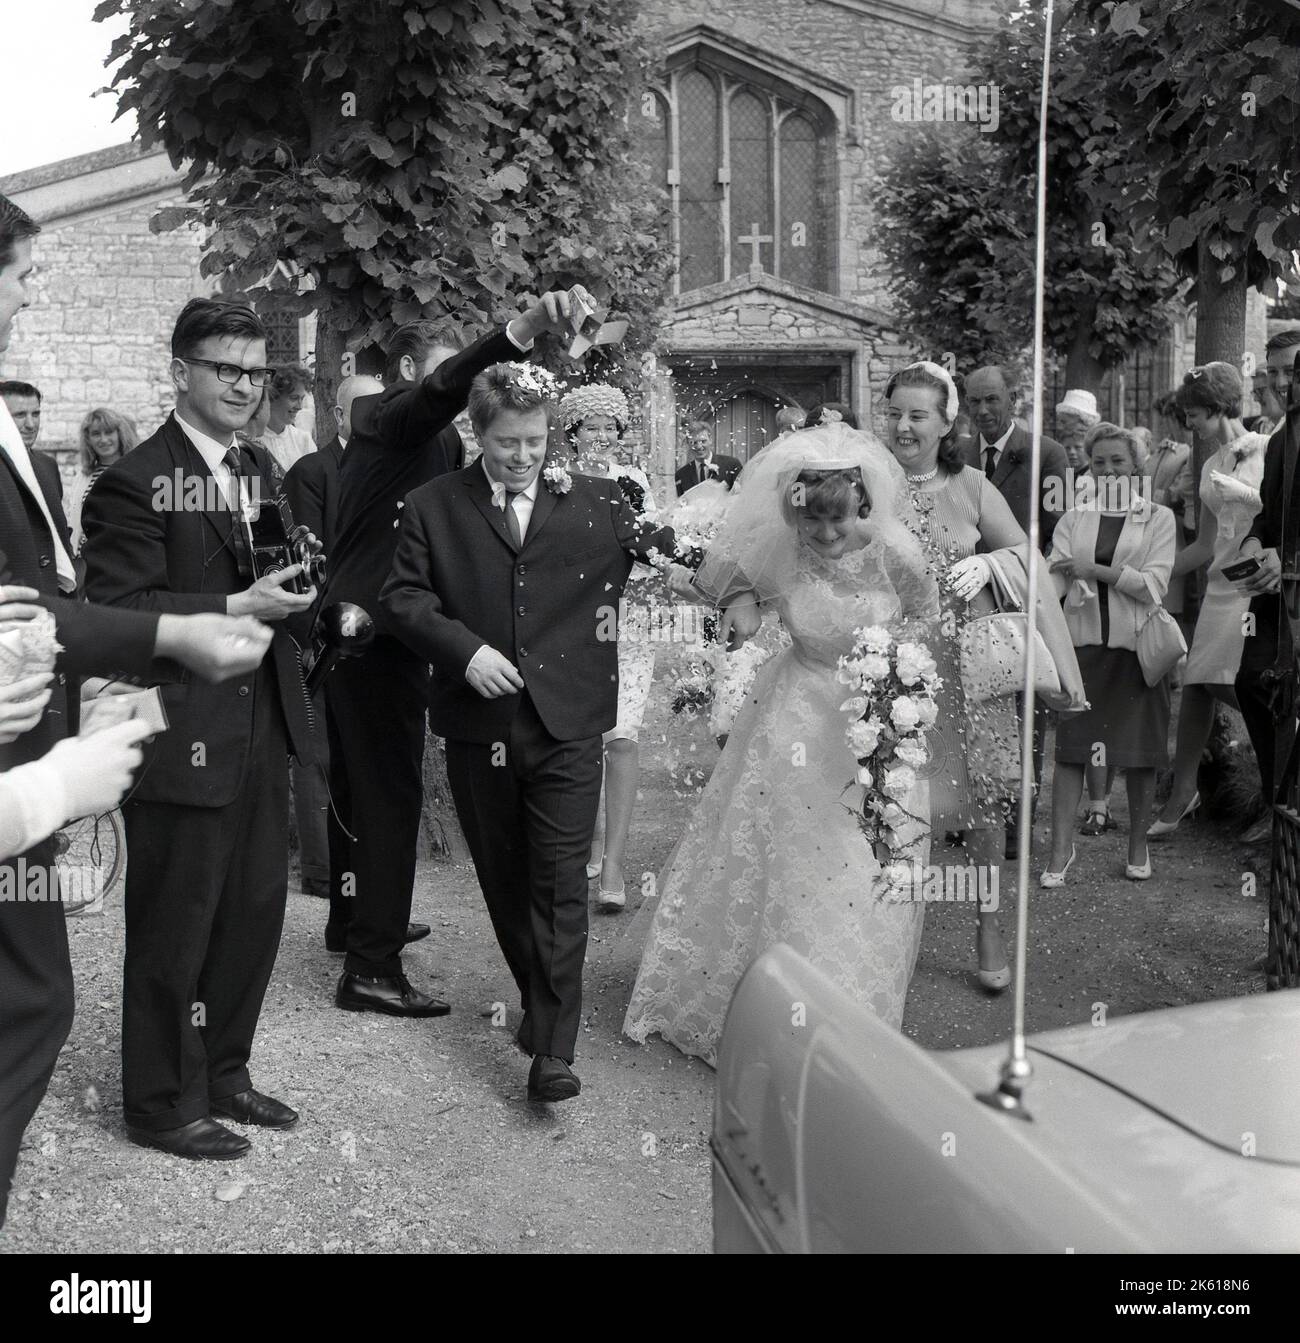 1960s wedding immagini e fotografie stock ad alta risoluzione - Alamy